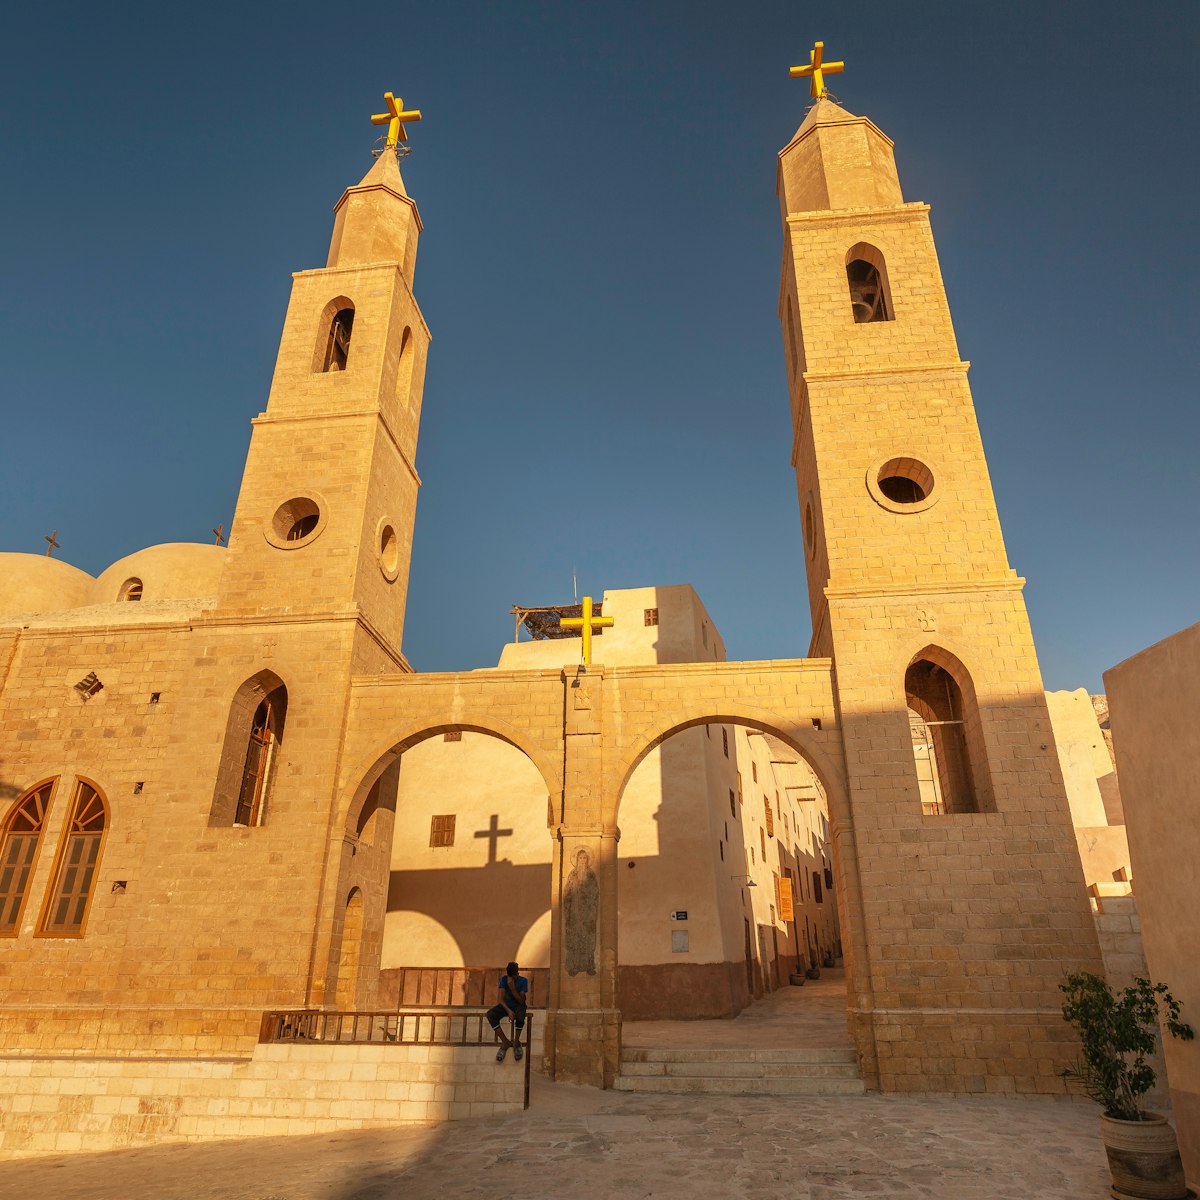 Bell towers of Saint Anthony church, Eastern Desert, Egypt.